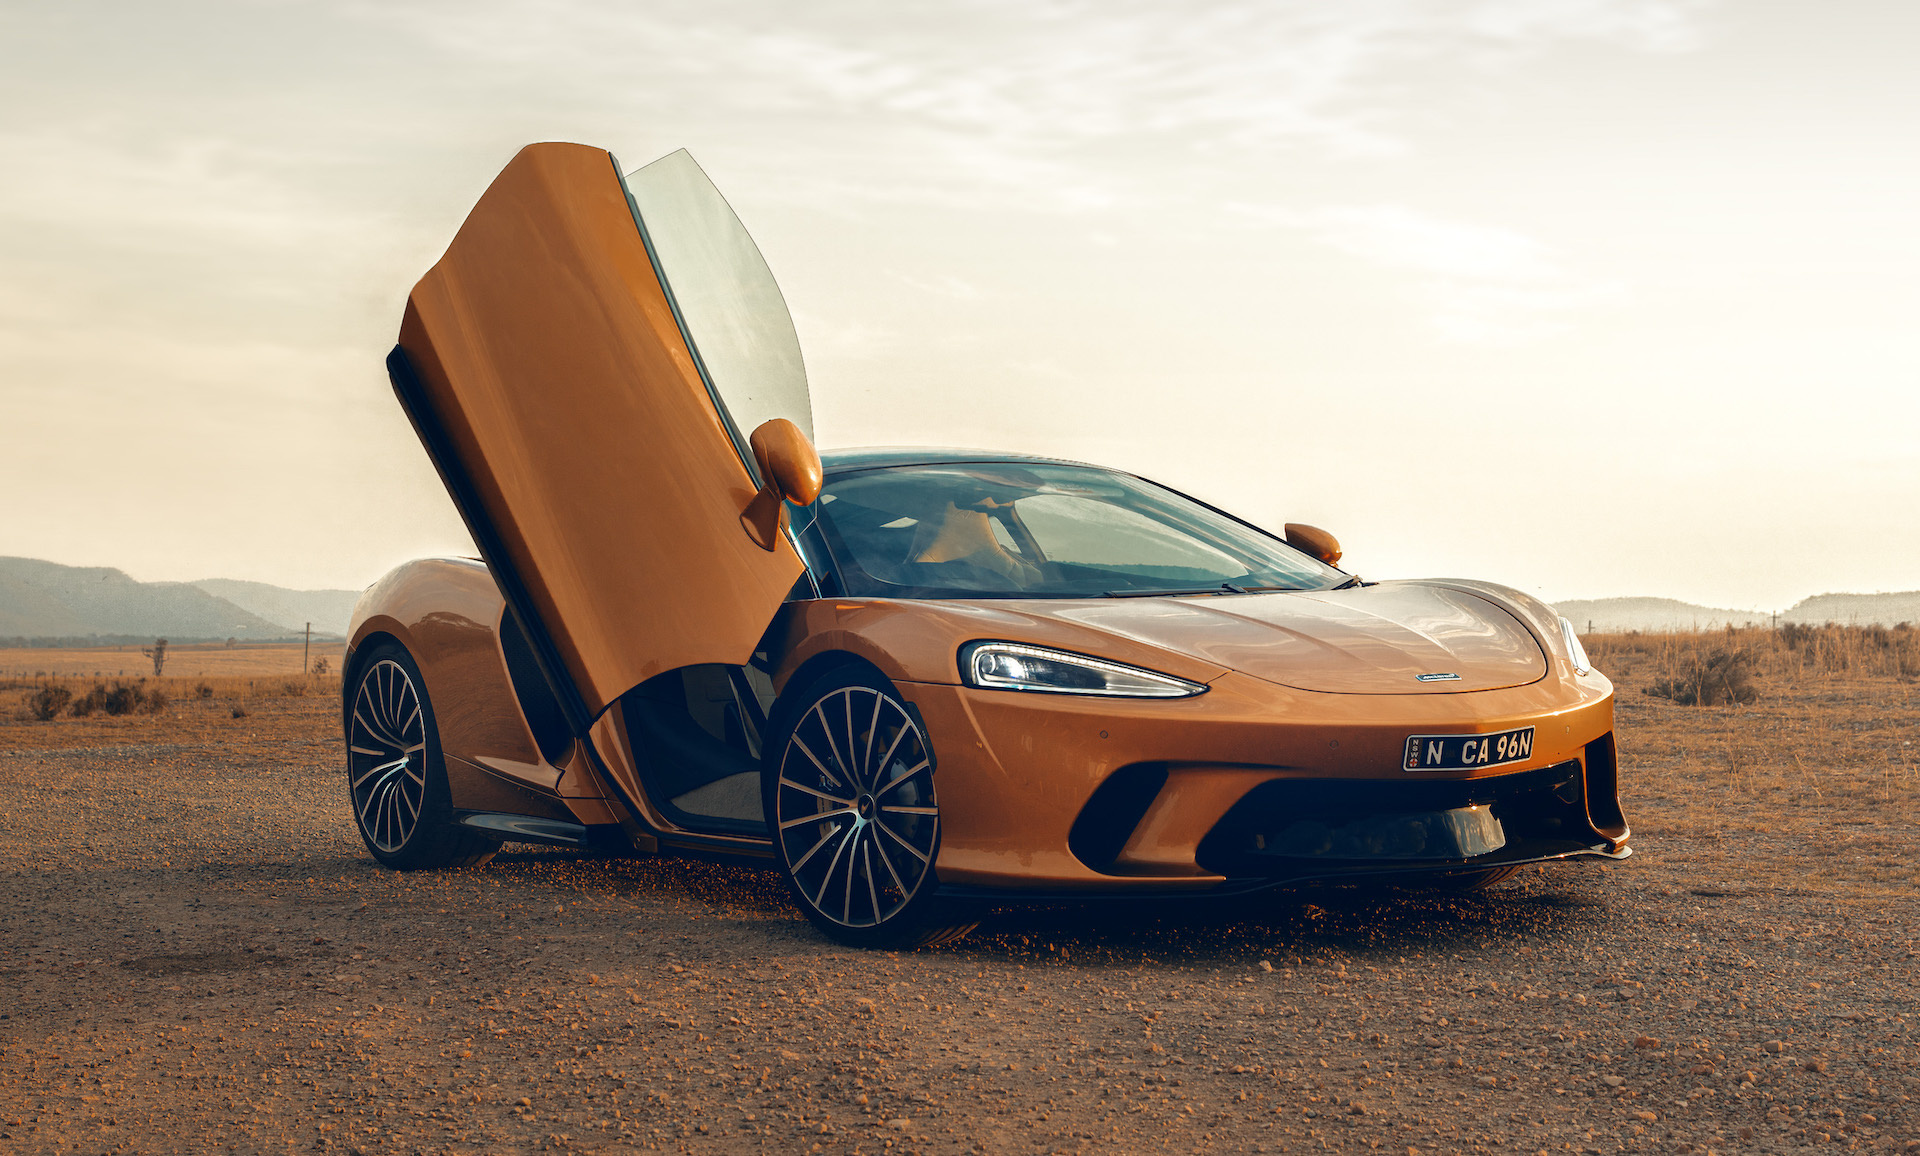 McLaren GT, Perfect road trip supercar, Performancedrive review, Ultimate driving pleasure, 1920x1160 HD Desktop